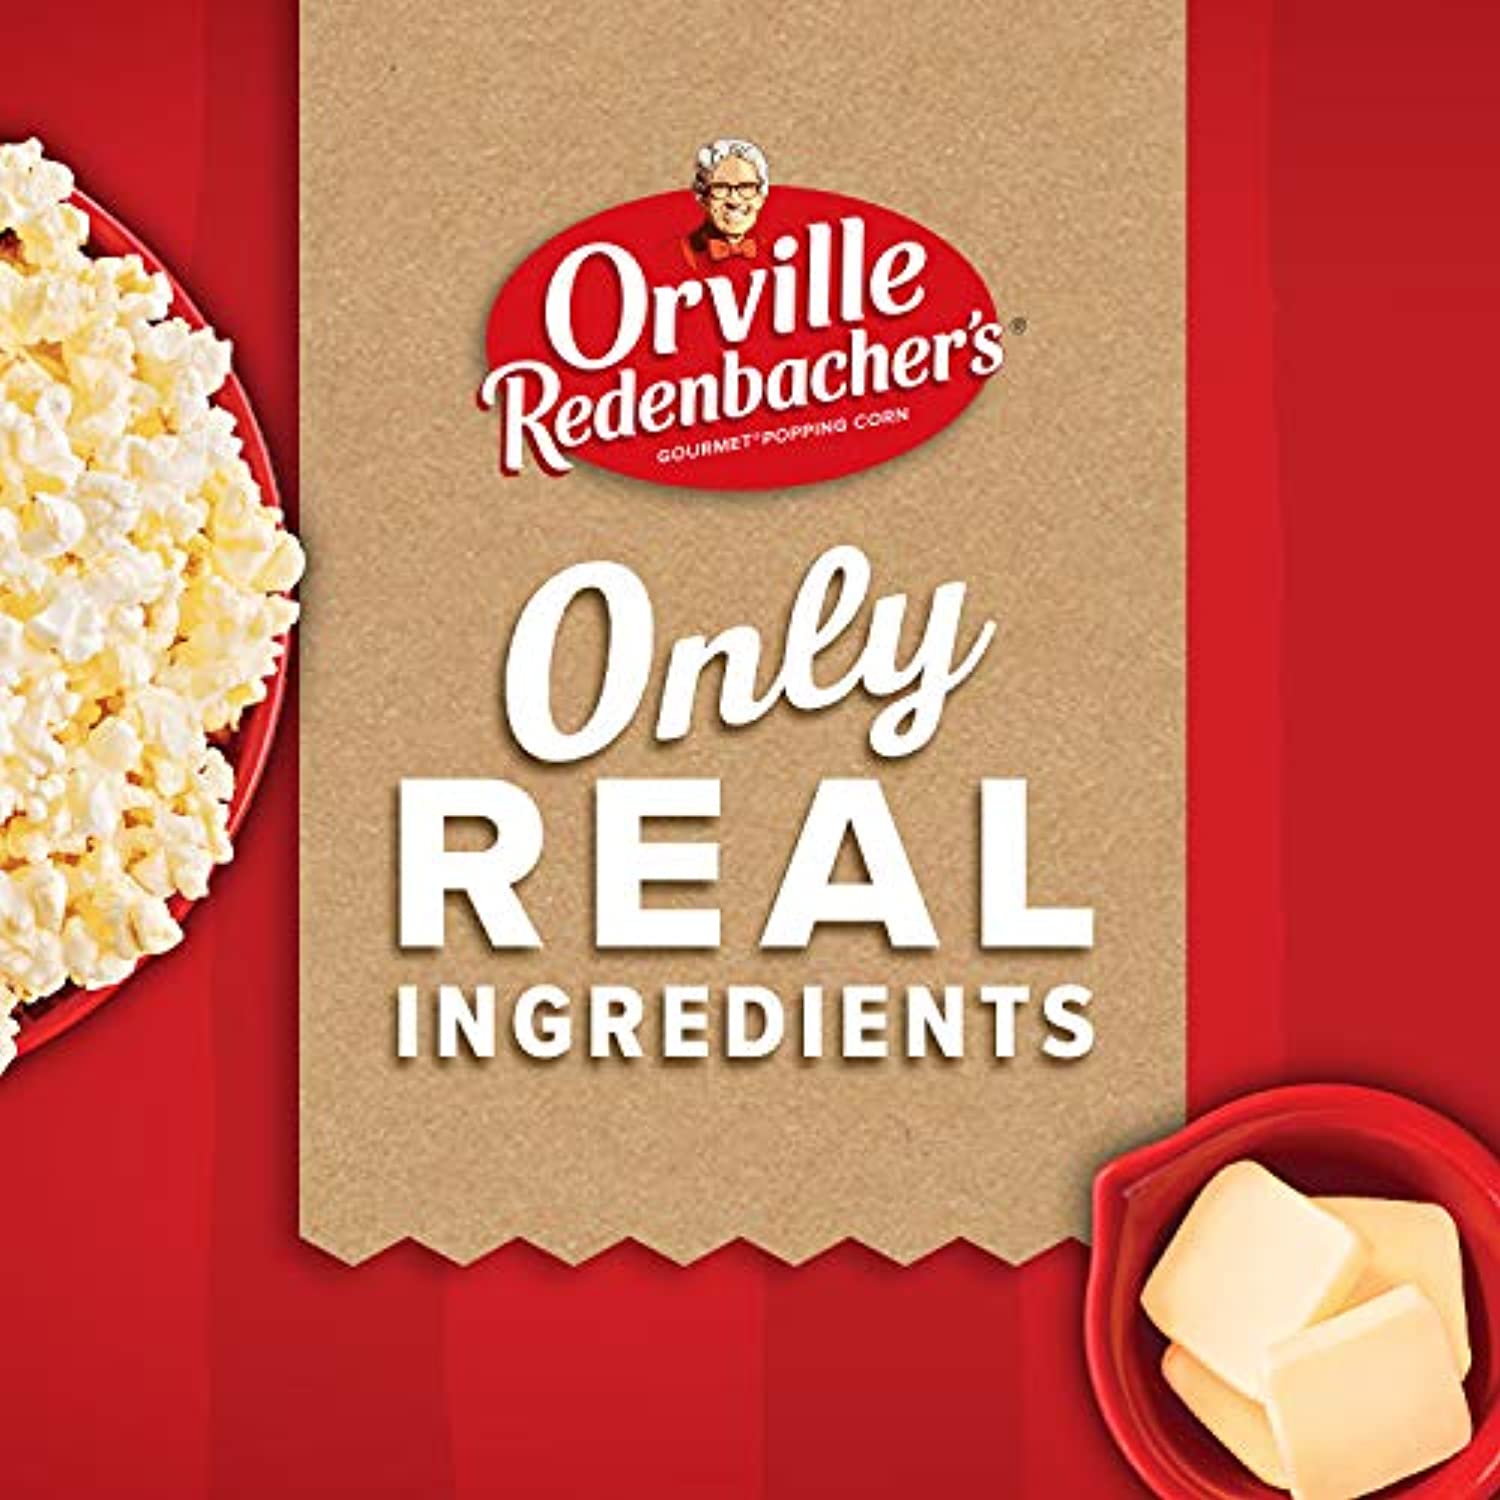 Orville Redenbachers Light Butter Popcorn, Classic Bag, 6 Ct - Walmart.com